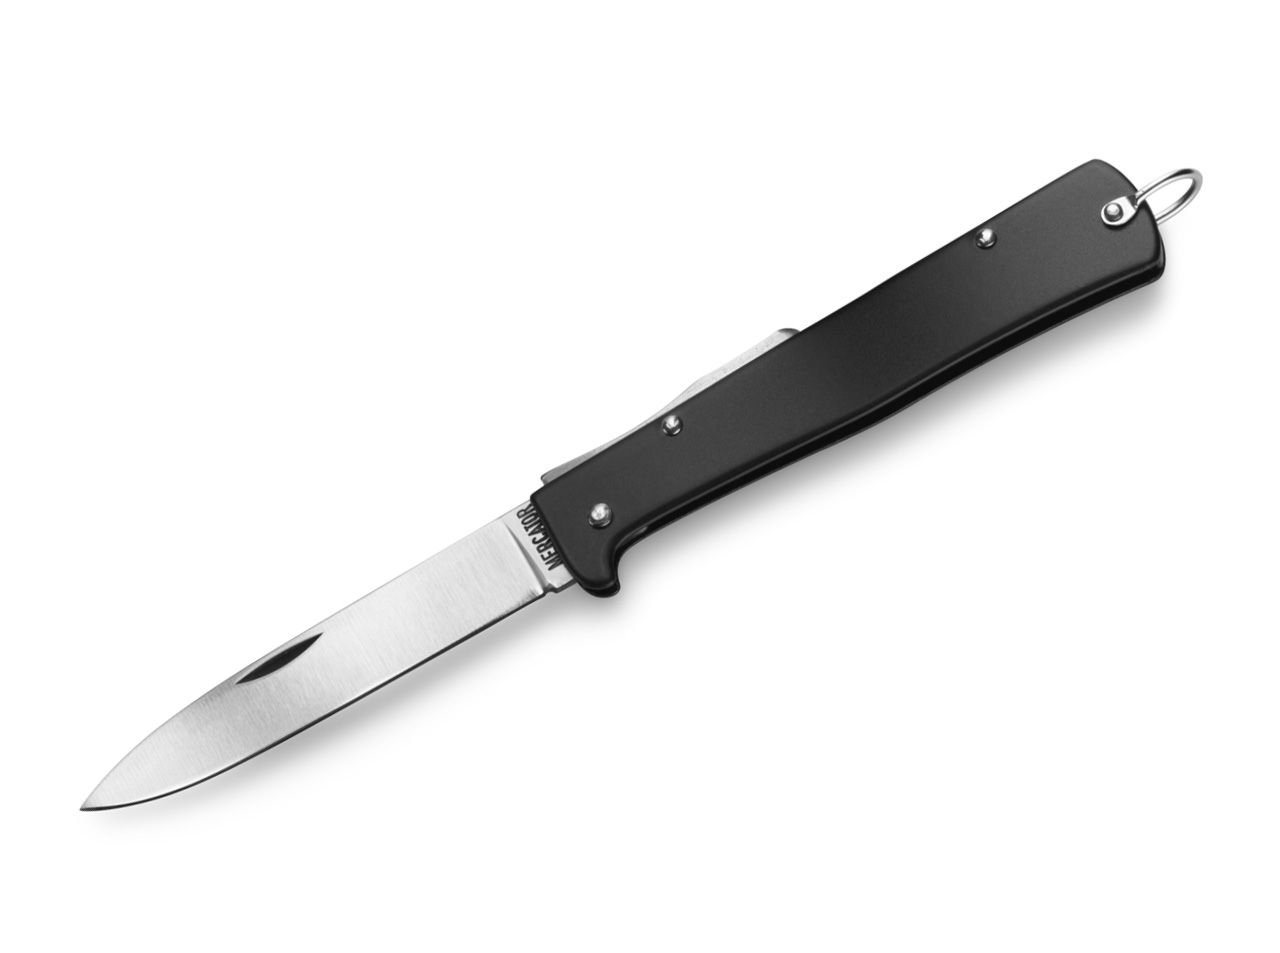 Otter Messer Taschenmesser Mercator-Messer groß schwarz mit Clip, Klinge Carbonstahl, Backlock von Otter Messer